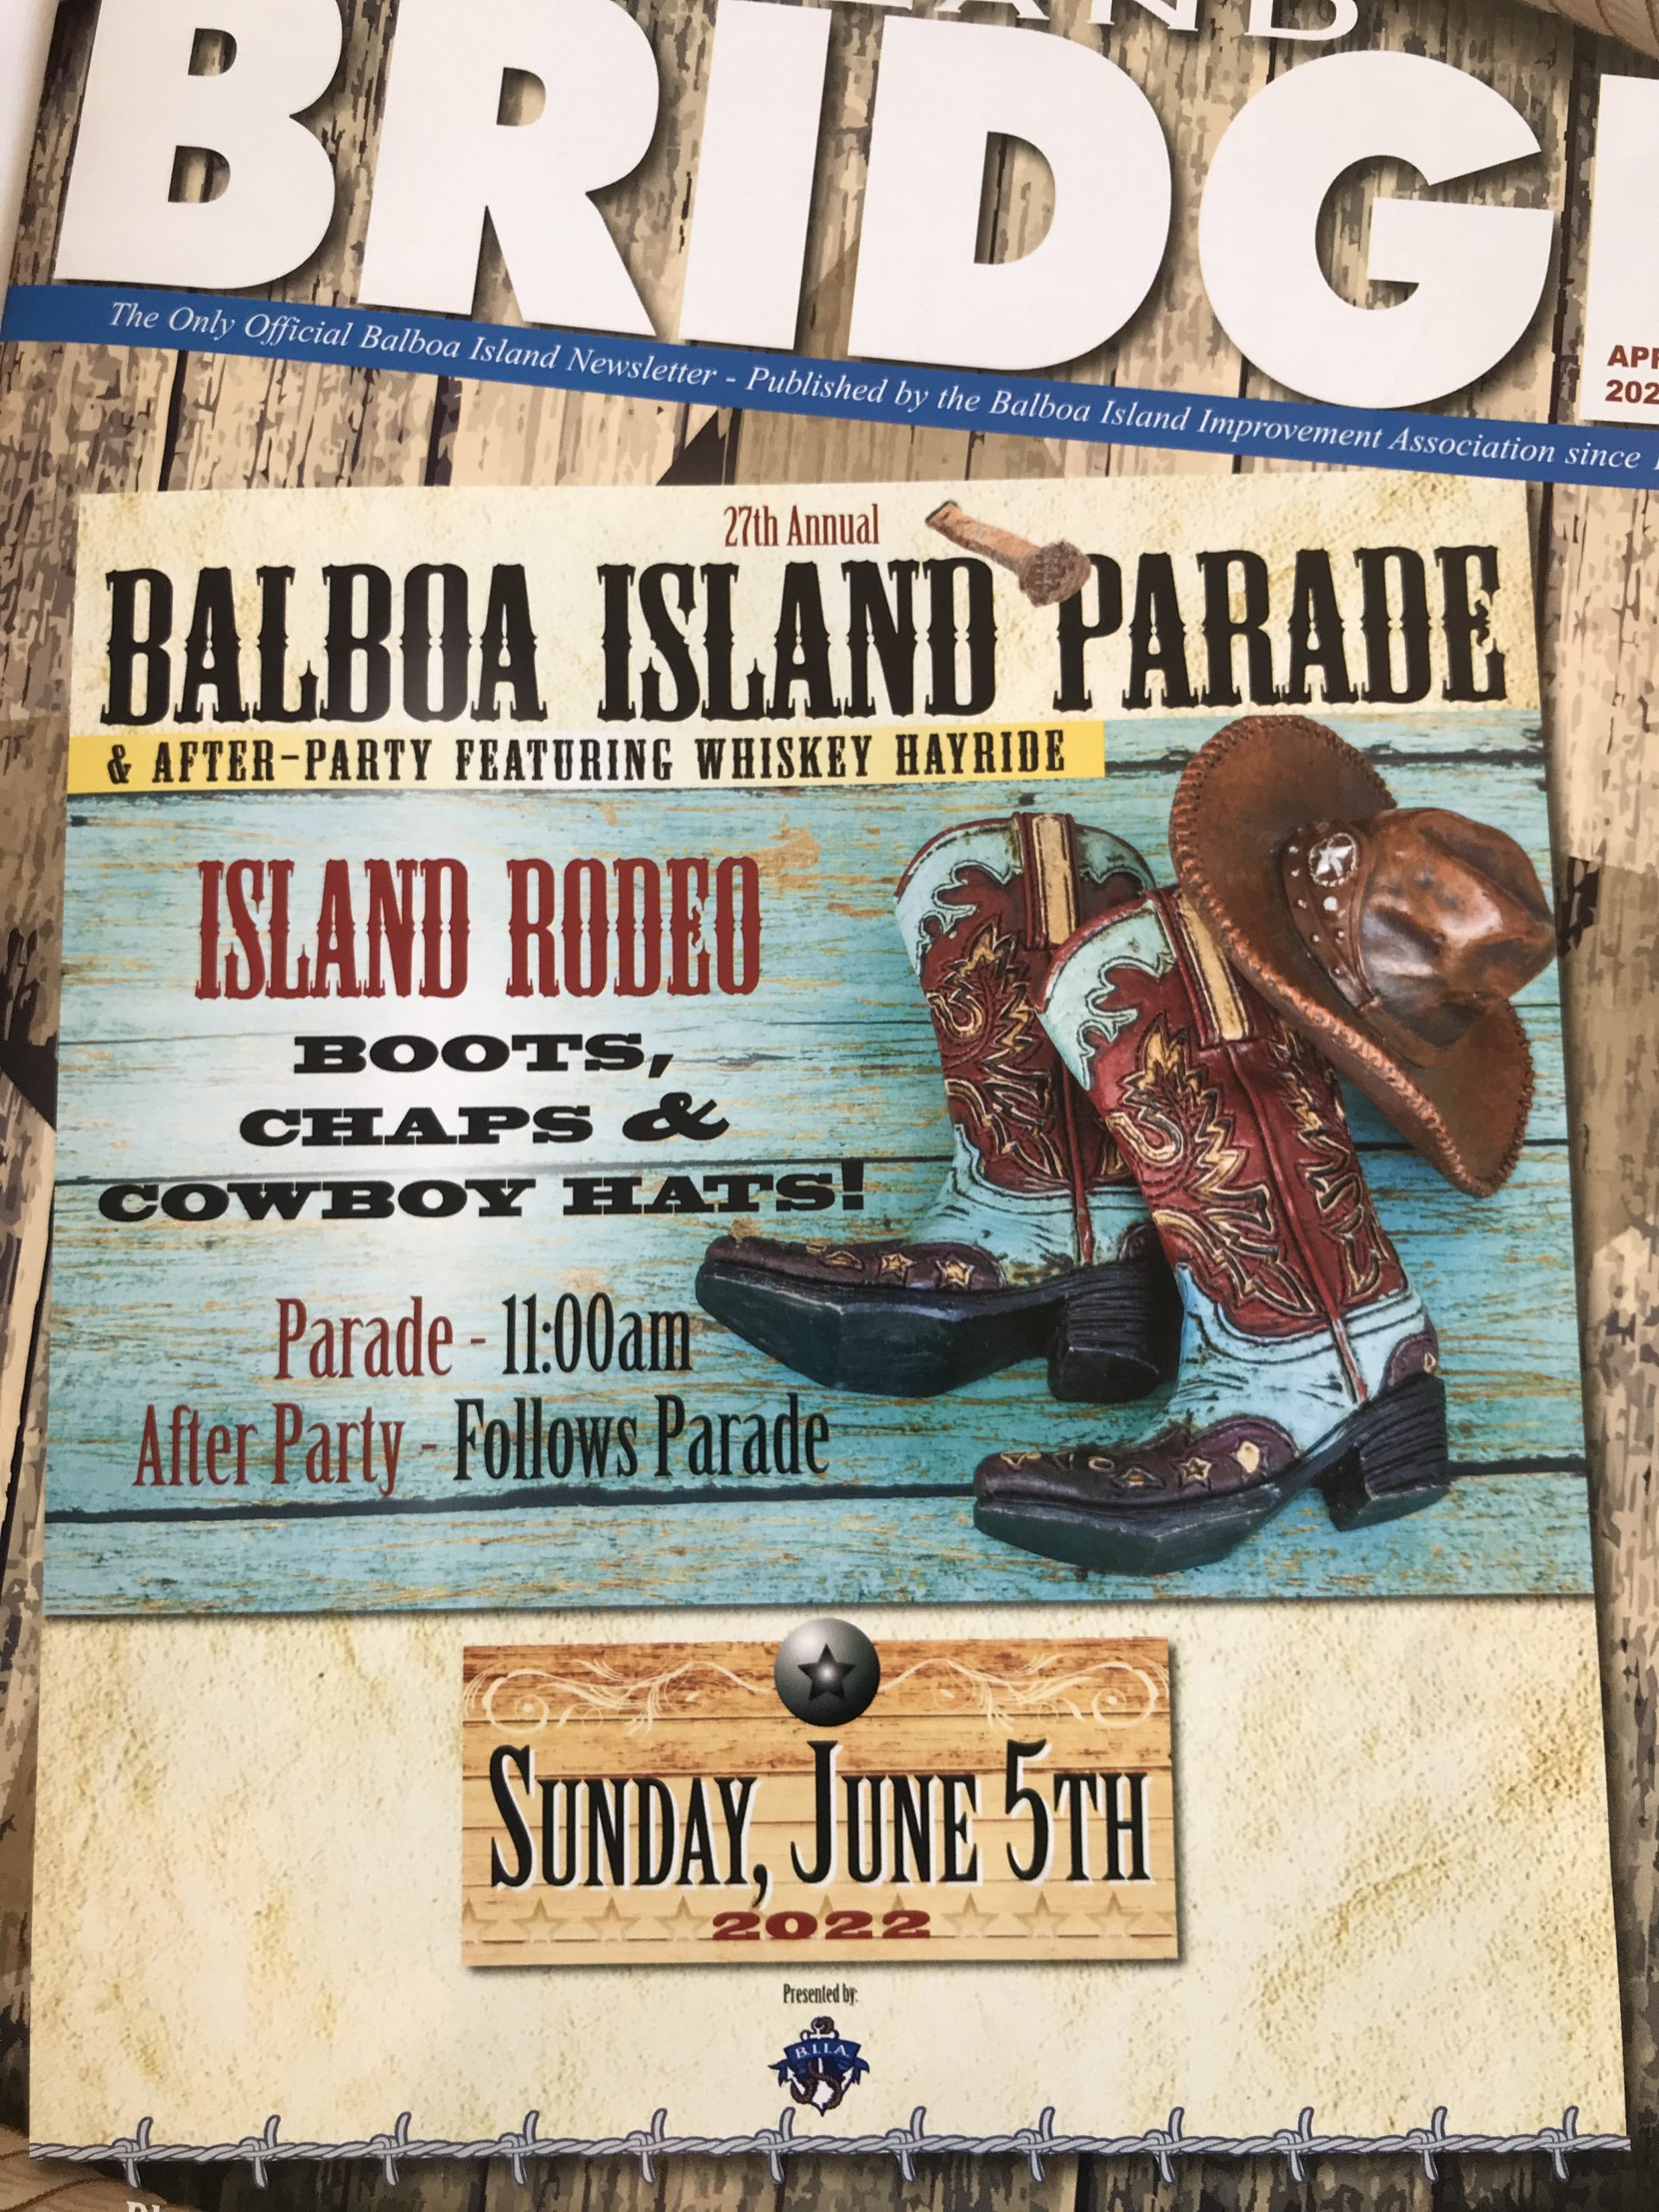 2022 27th Annual Balboa Island Parade Island Rodeo Theme